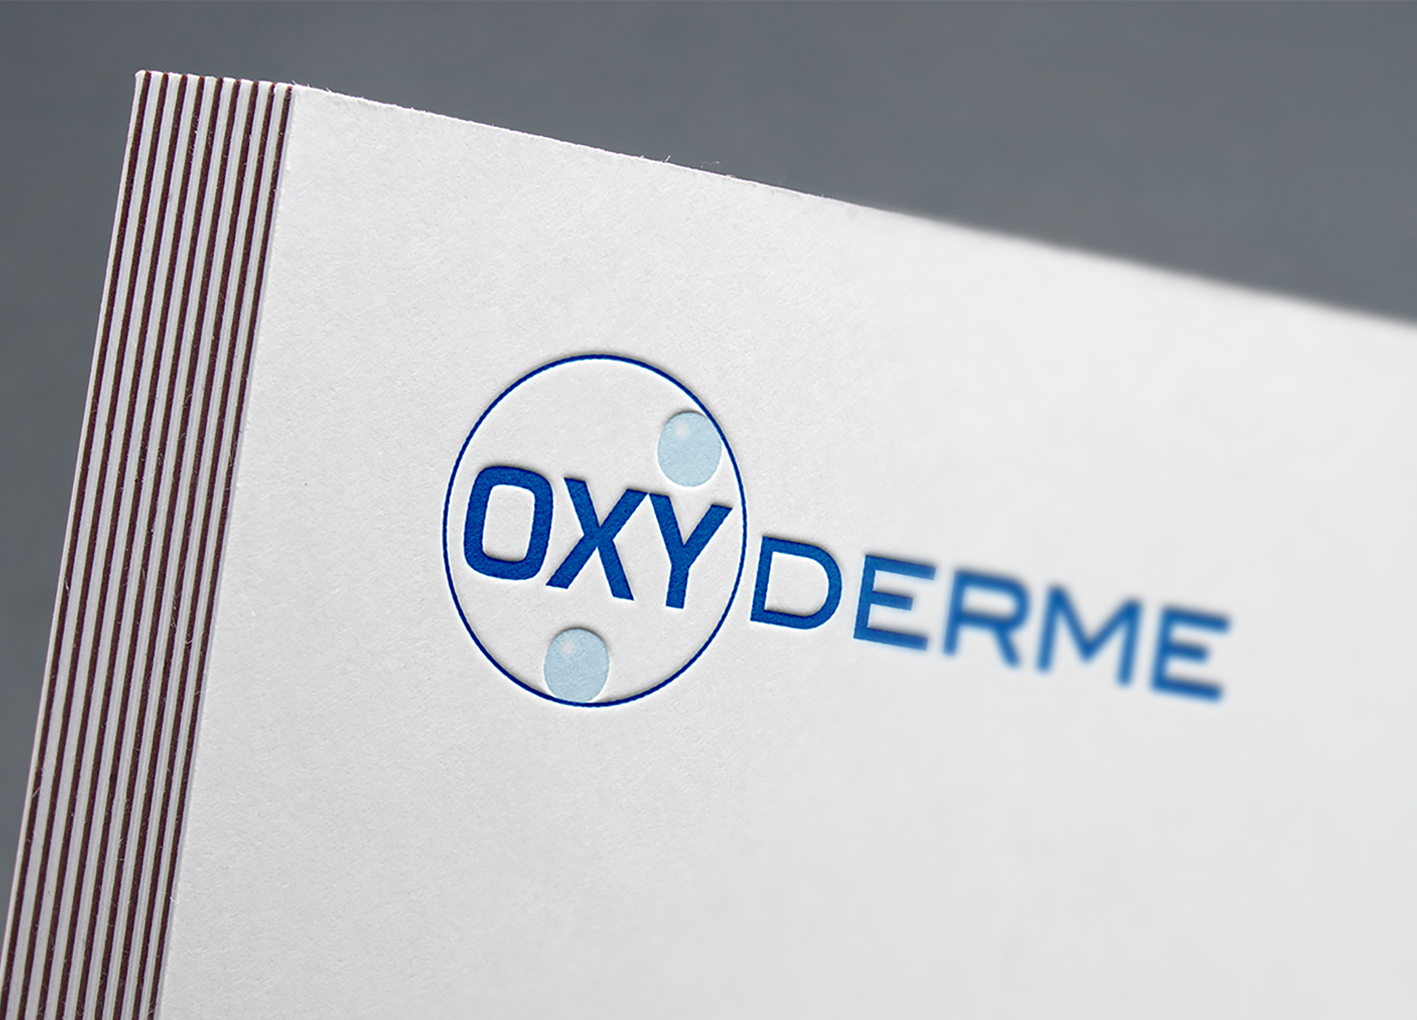 OXYDERME Leterpress 2020 - Oxyderme